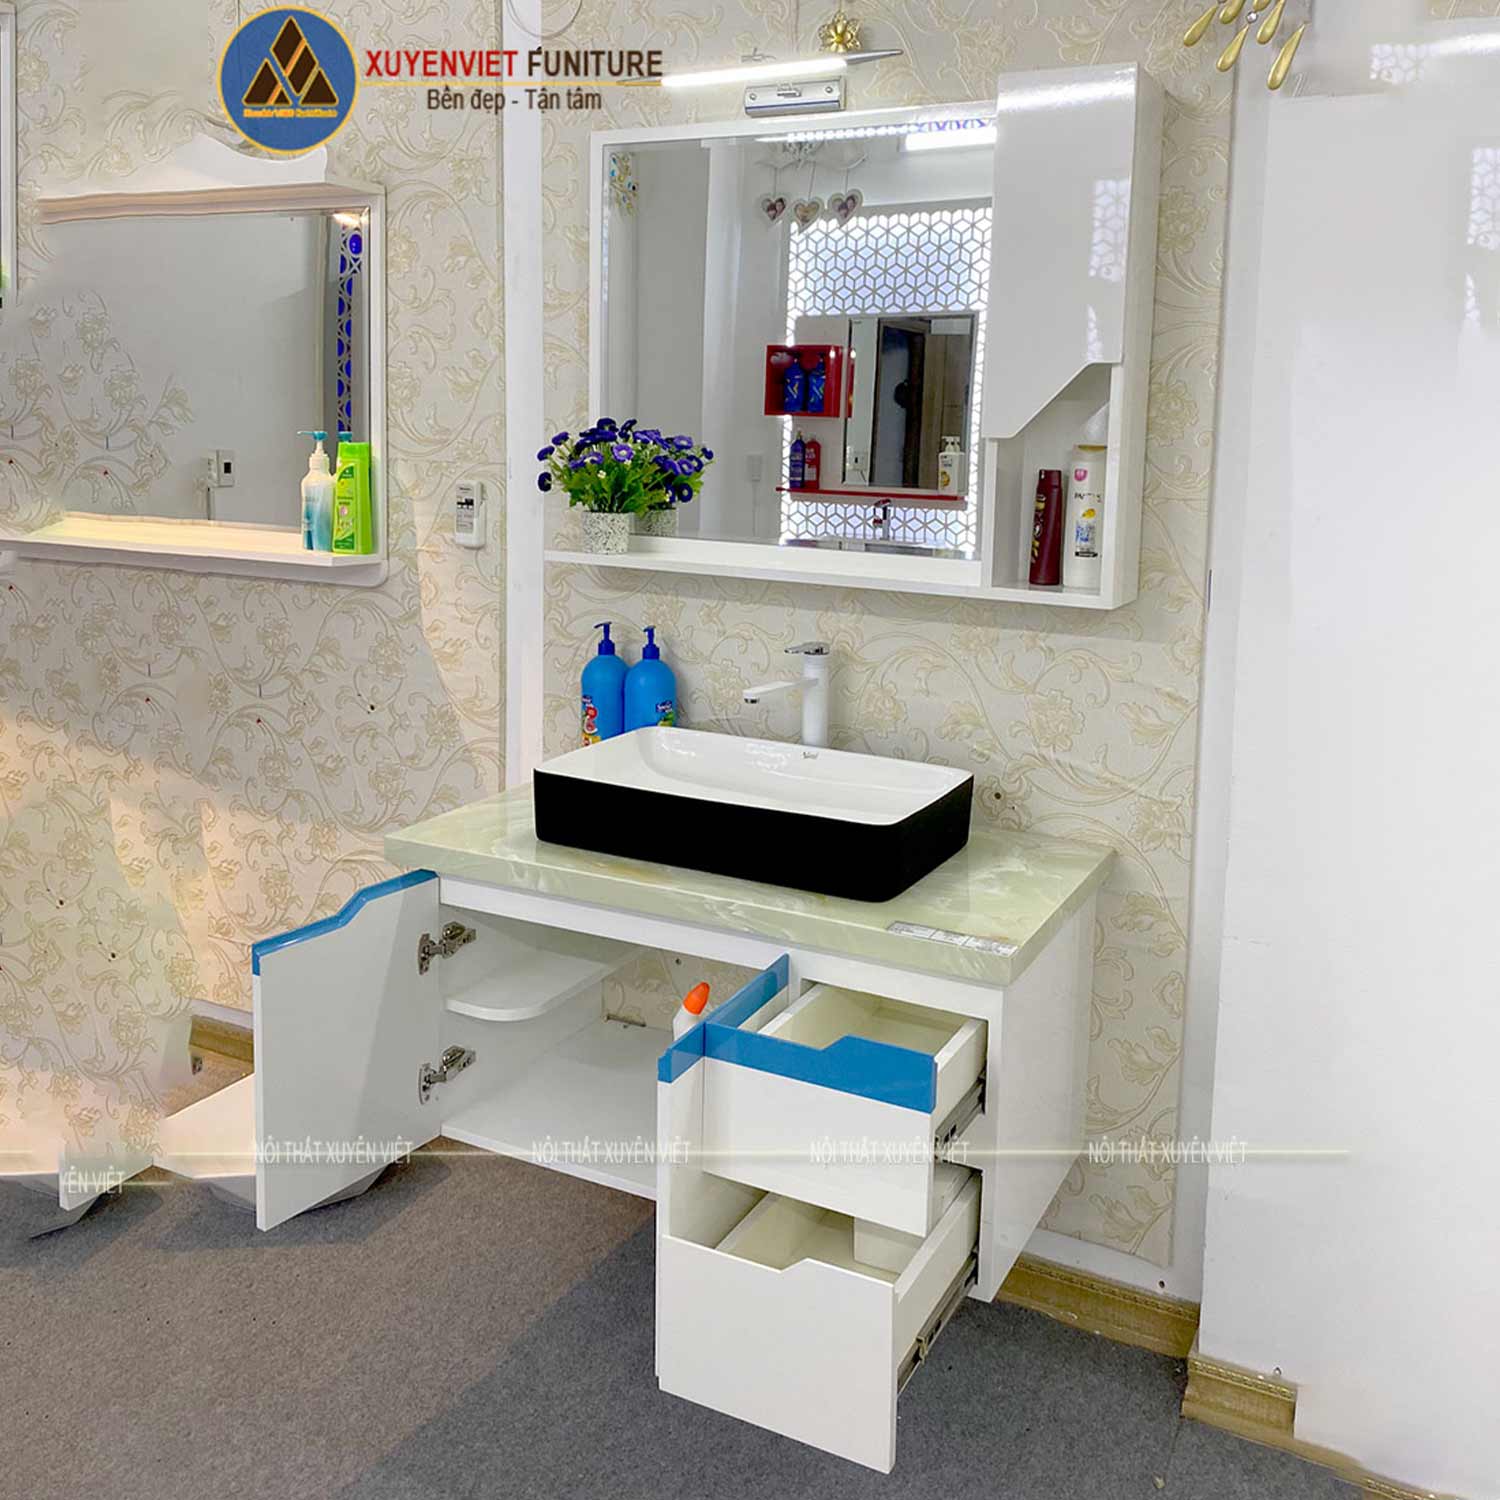 Hình ảnh mẫu tủ nhựa nhà vệ sinh hiện đại đa năng LBK245S được bày bán tại showroom Xuyên Việt